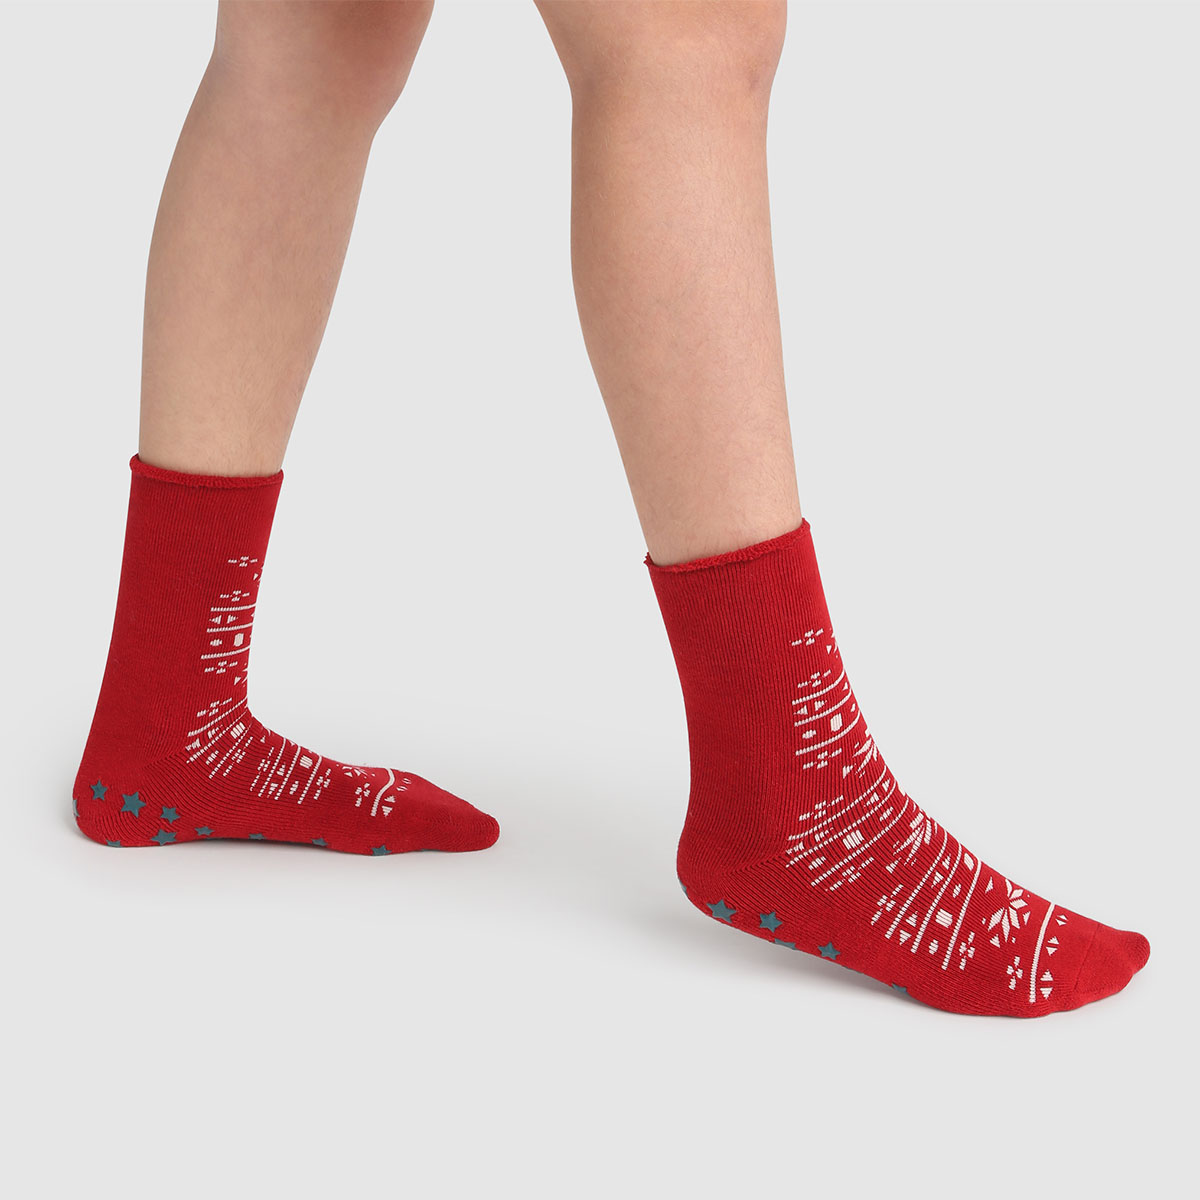 Belles chaussettes chaudes rouges DPAM enfant unisexe - Pointure